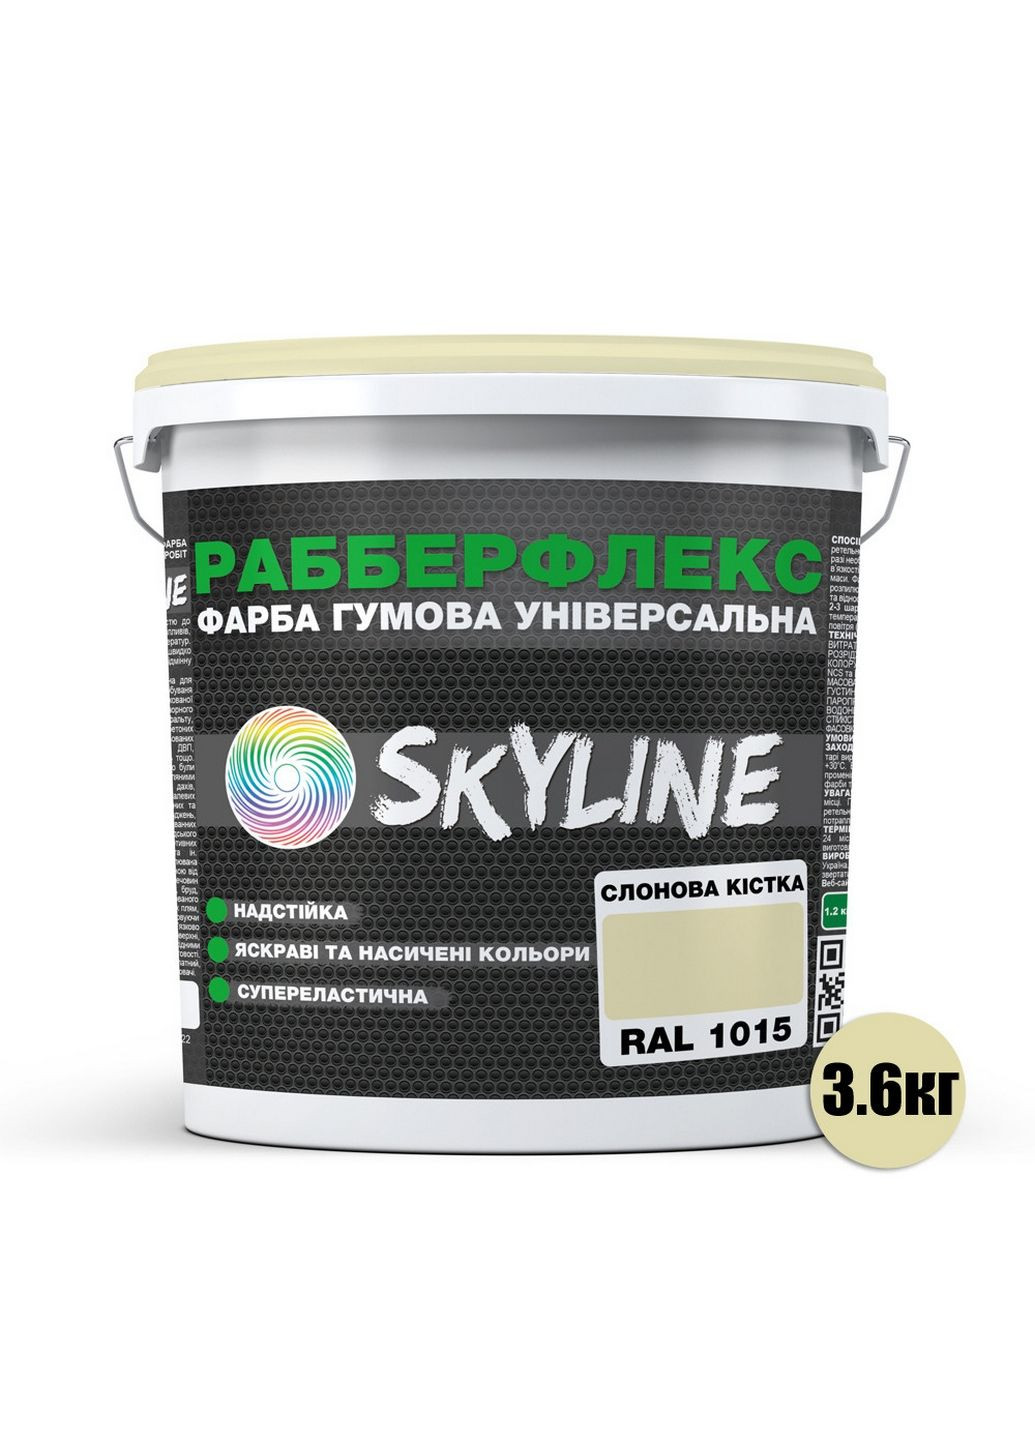 Надстійка фарба гумова супереластична «РабберФлекс» 3,6 кг SkyLine (289462316)